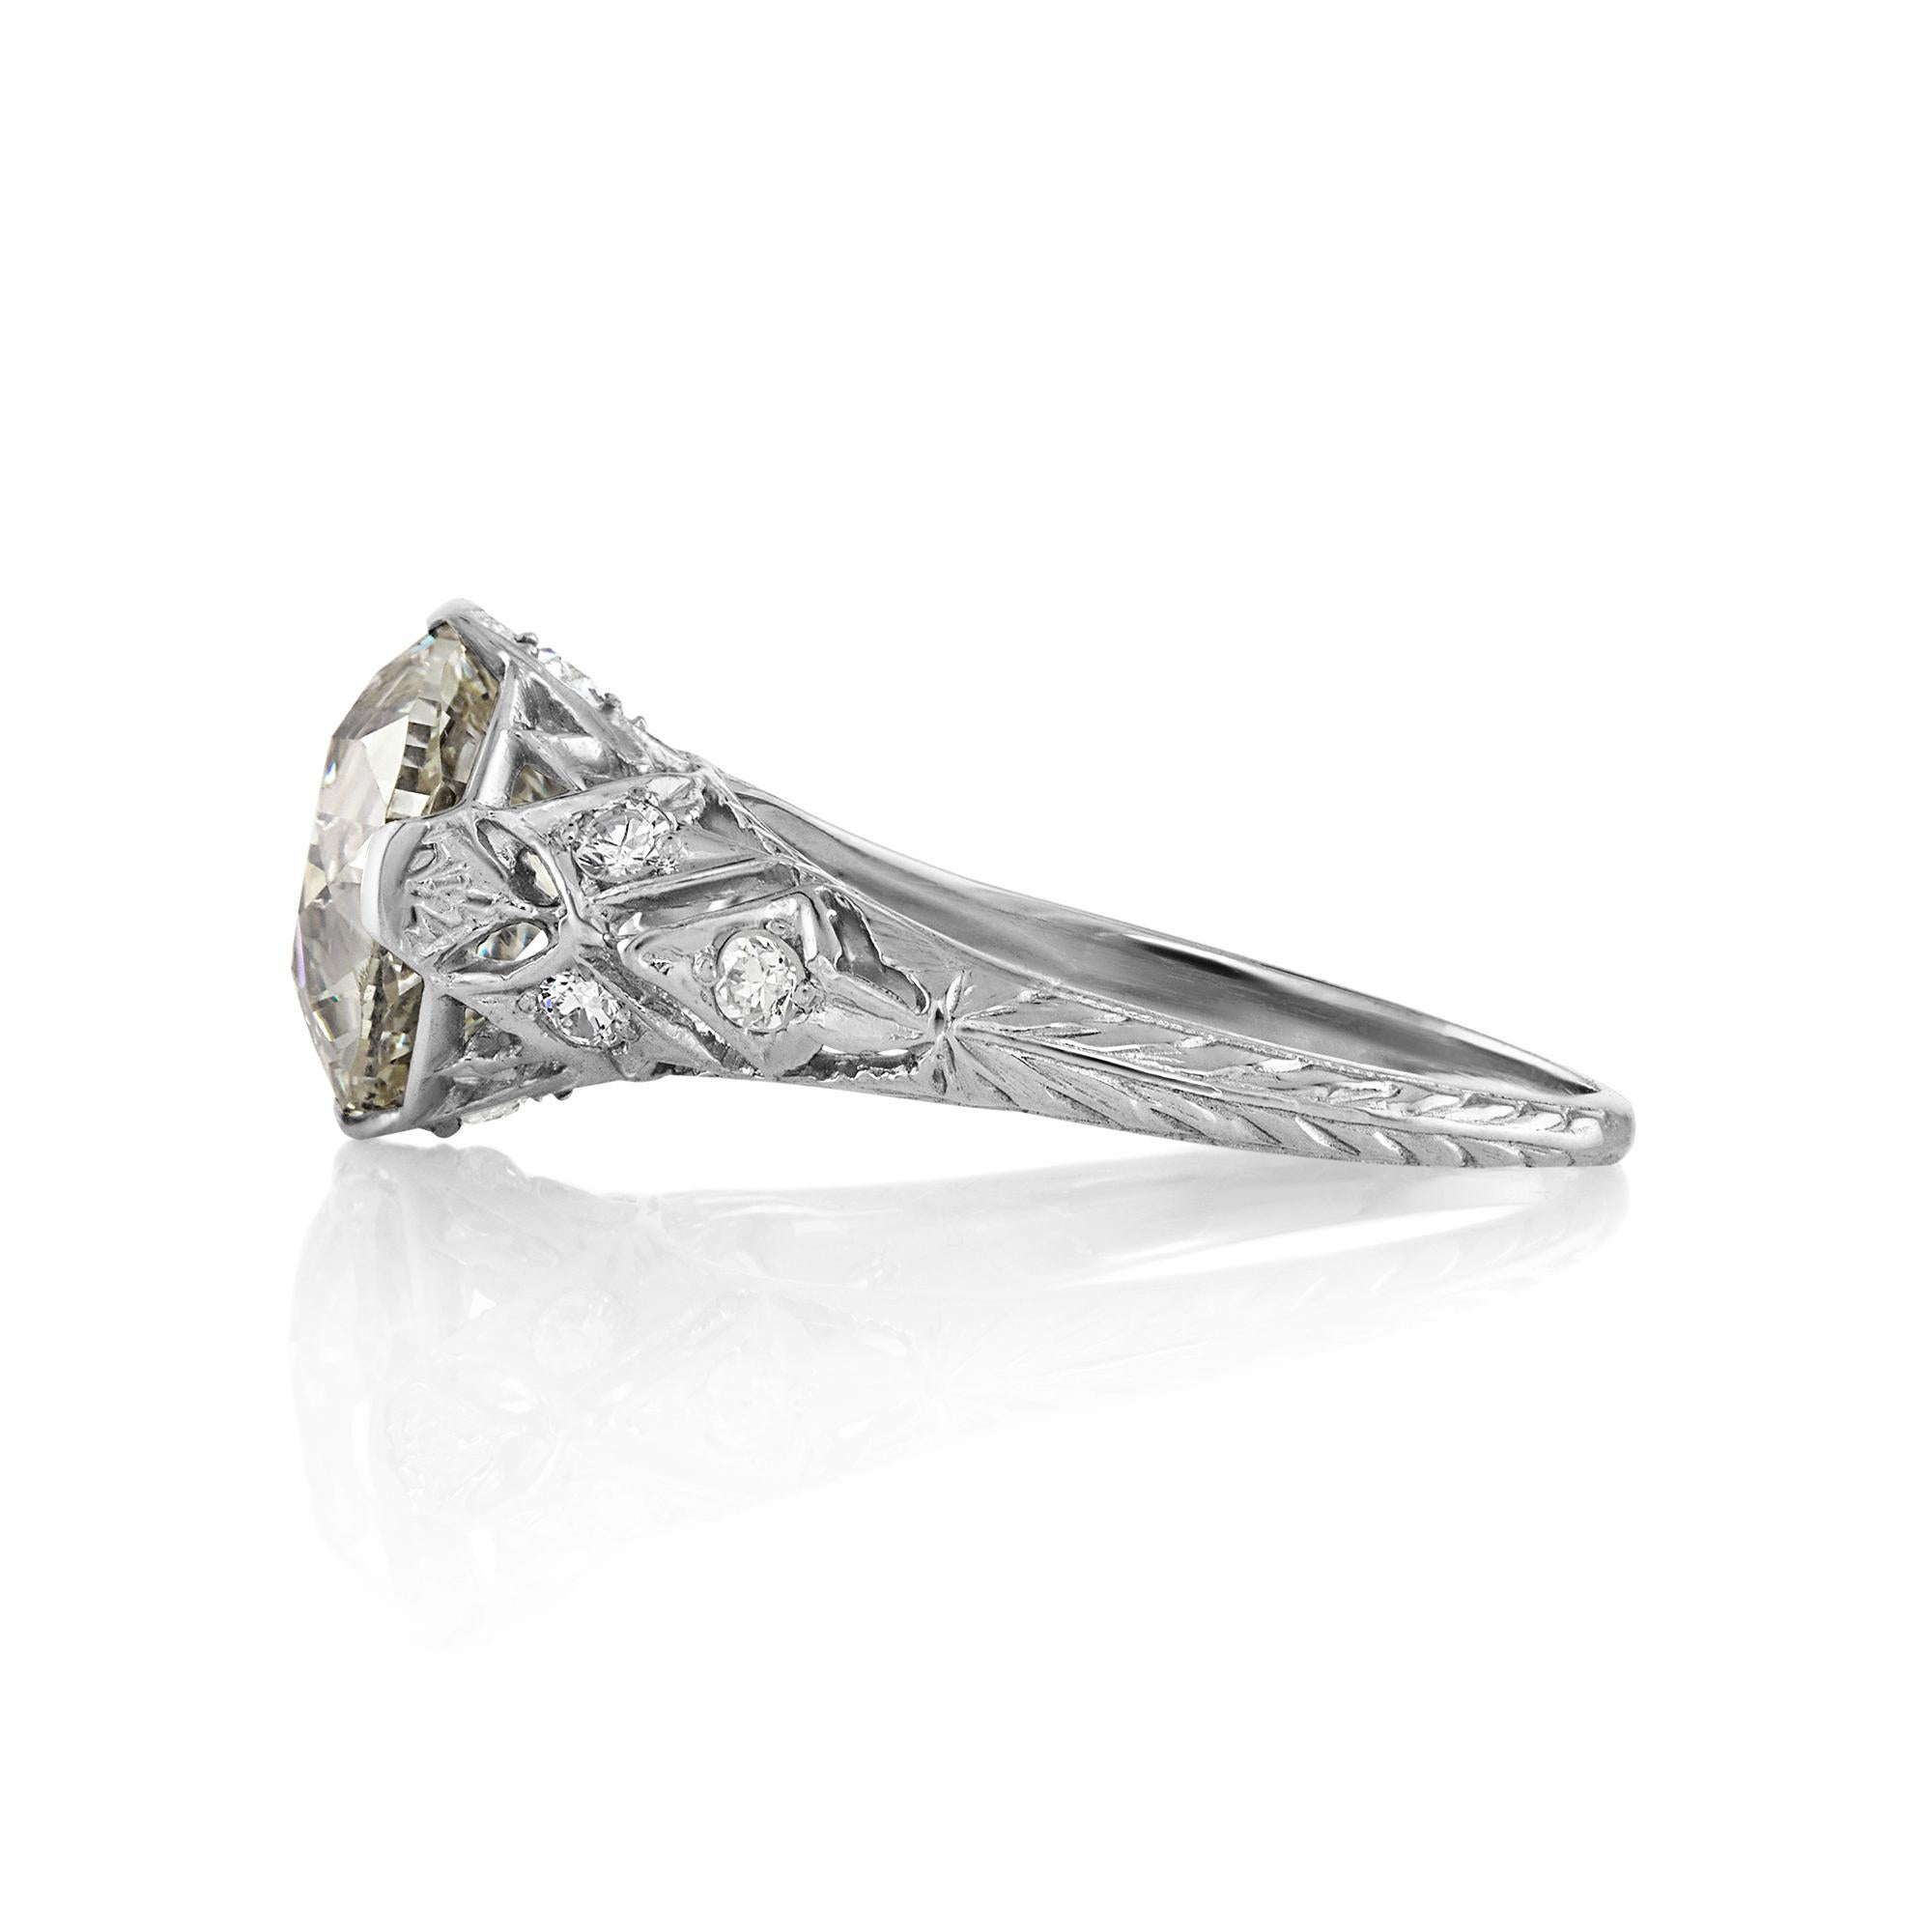 Antique Vintage GIA 4..45ctw OLD EUROPEAN Diamond Platinum Anillo Eduardiano.

Los Anillos Eduardianos representan algunos de los mejores ejemplos de joyas de diamantes y platino que existen. Las joyas de diamantes eduardianas se hacían para que